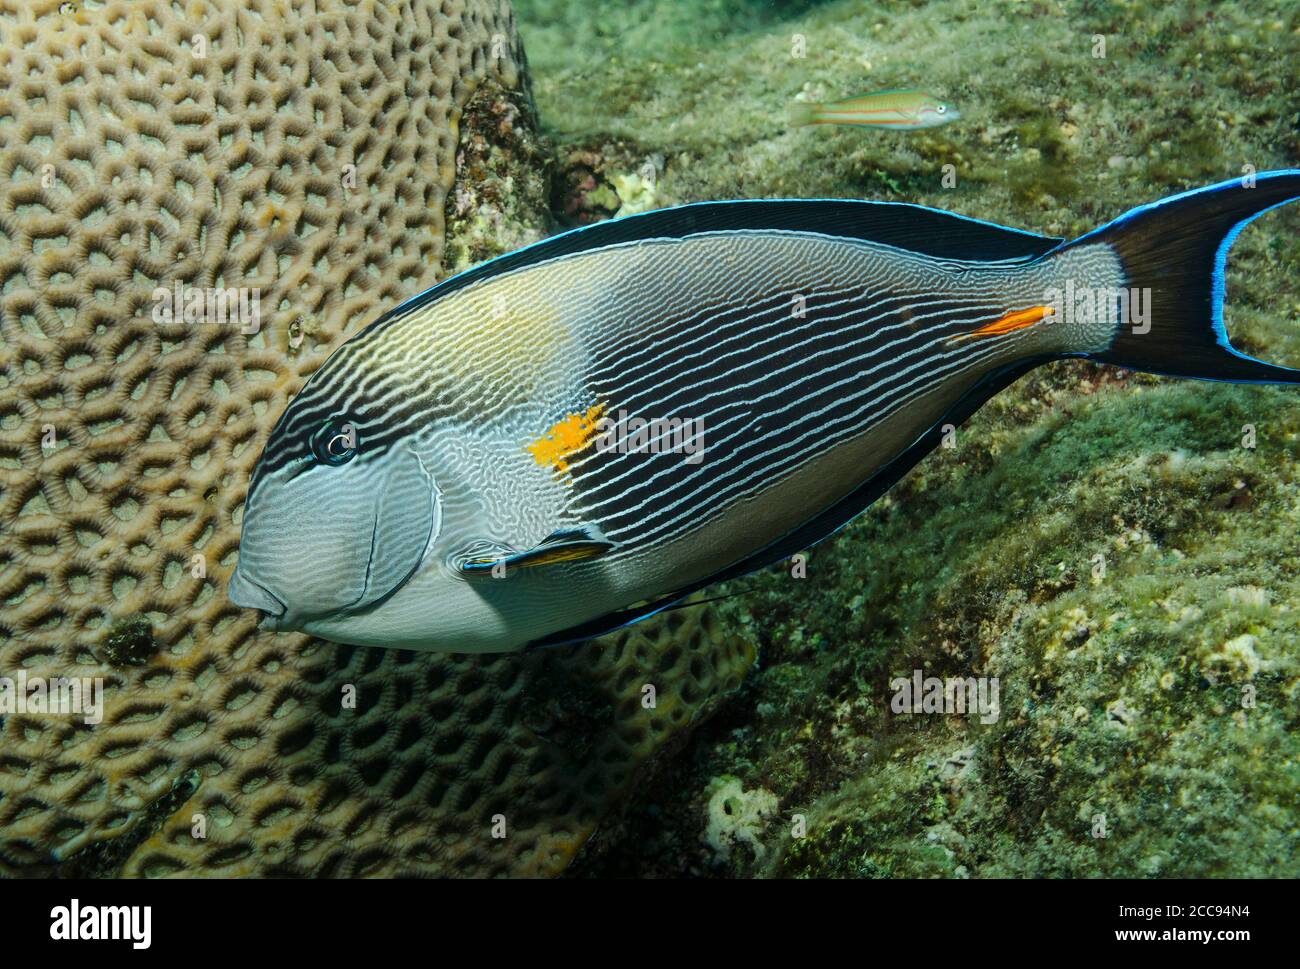 sohal surgeonfish, Acanthurus sohal, feeding on coral reef, Marsa Alam, Egypt Stock Photo